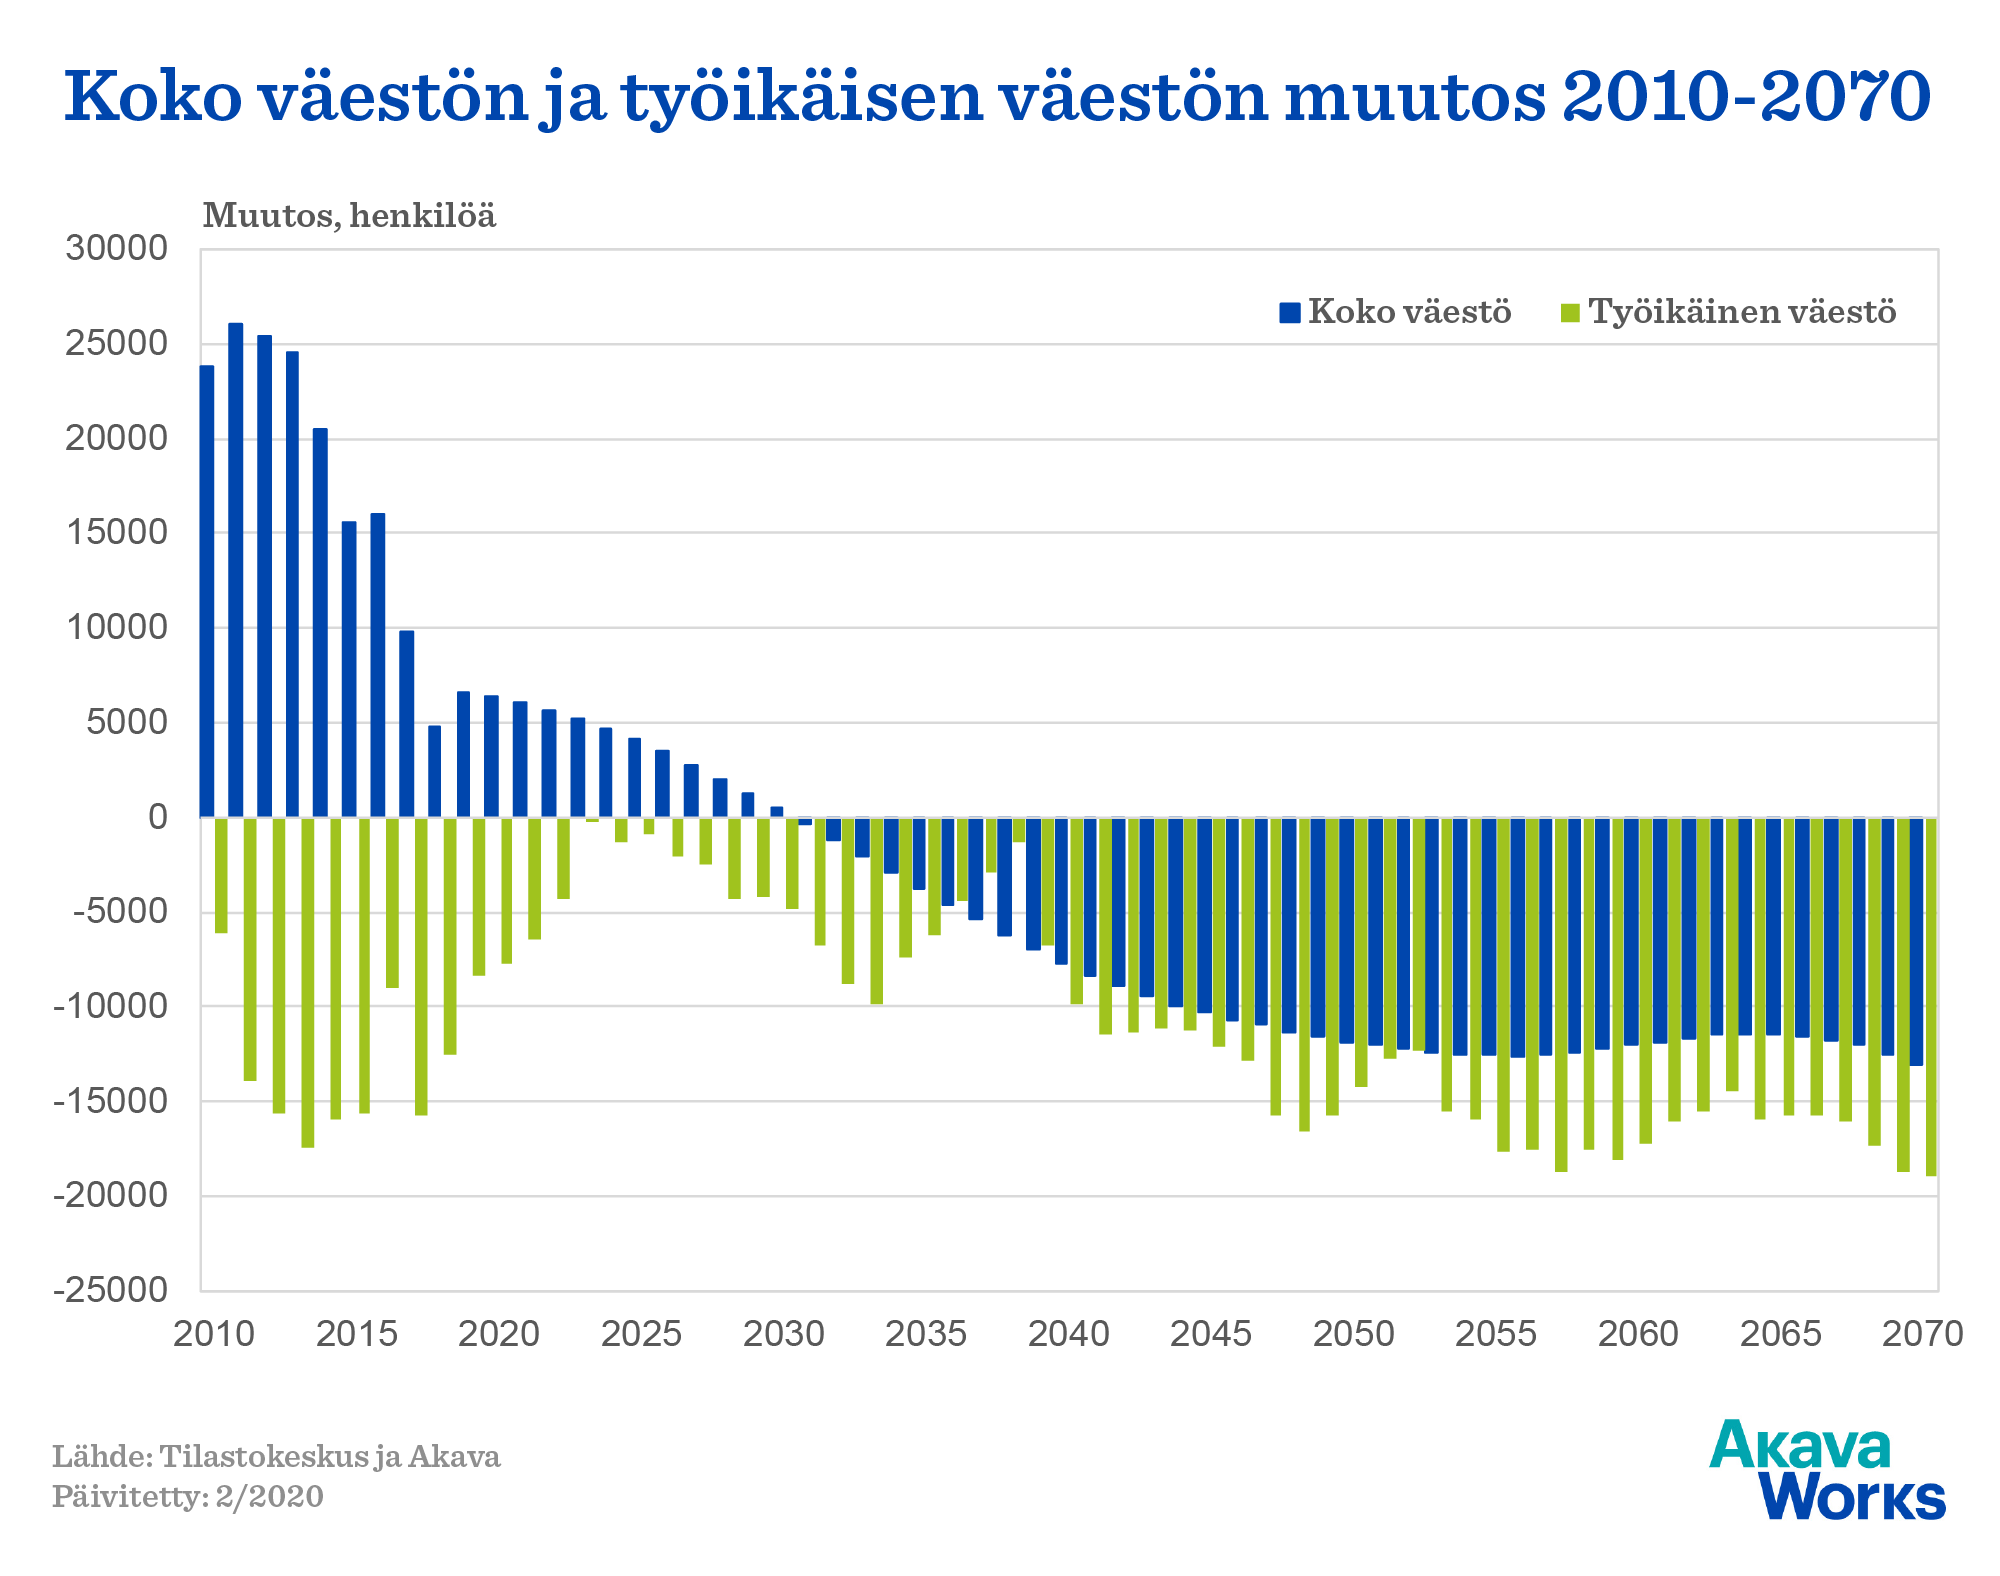 Koko väestön ja työikäisen väestön muutos 2010-2070. Lähde: Akava Works ja Tilastokeskus. Päivitetty: 2/2020.